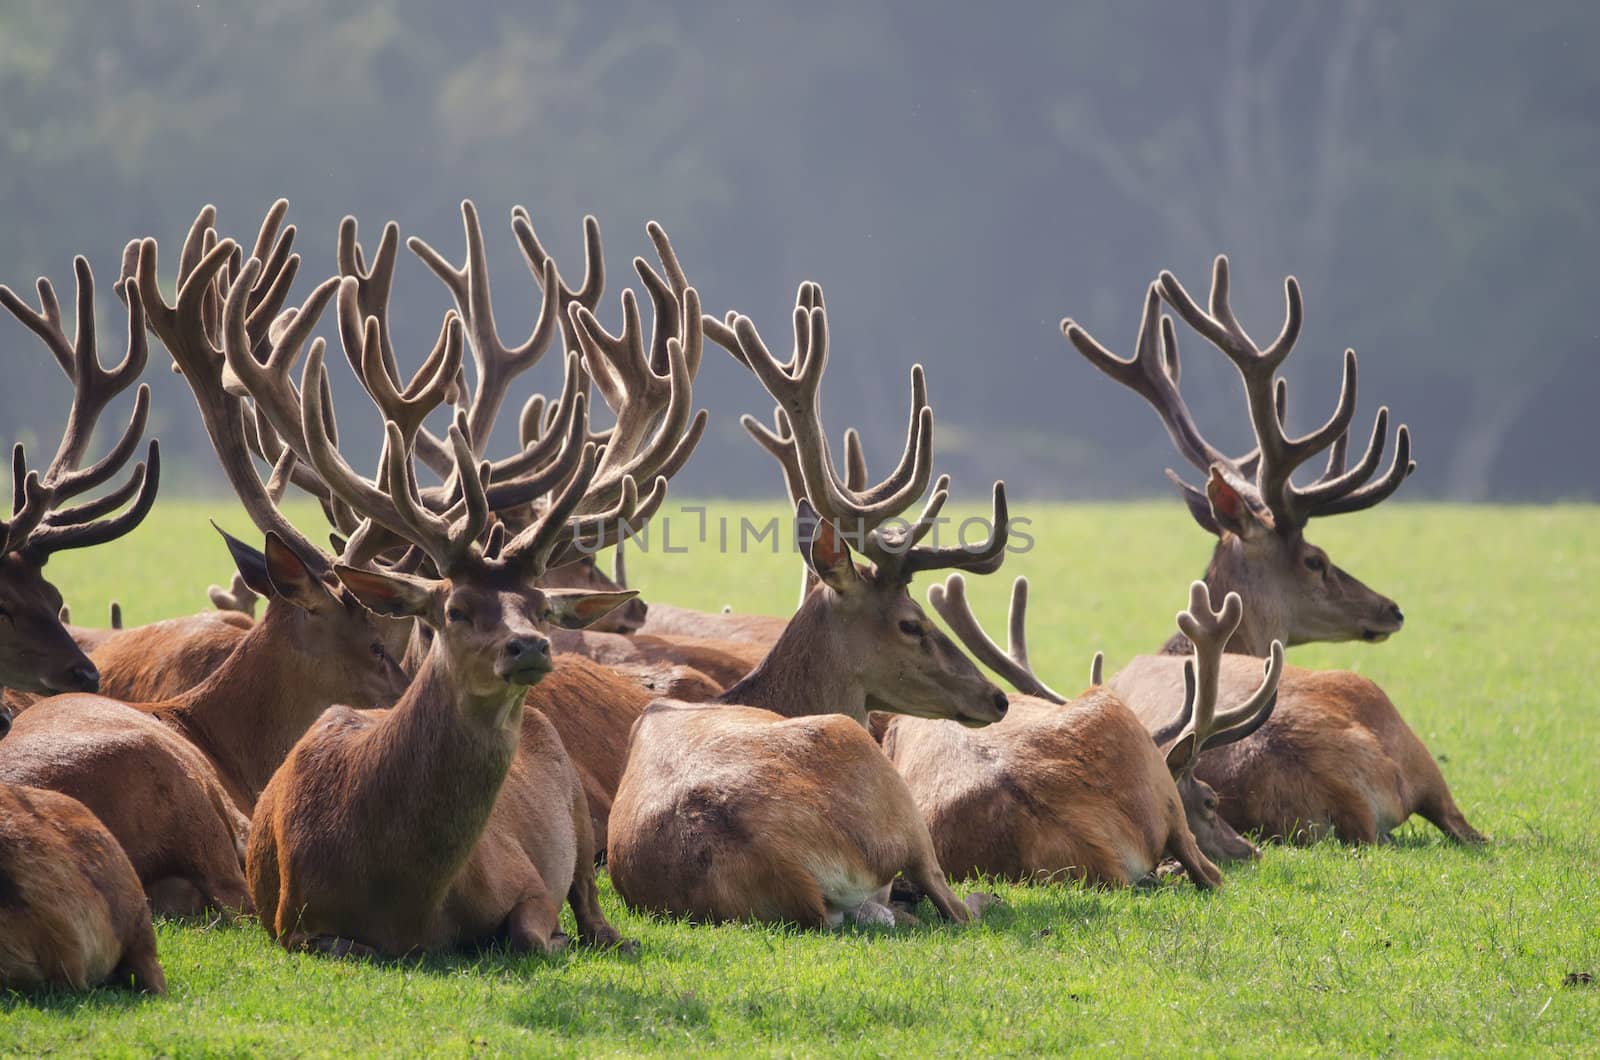 the herd of deer by njaj